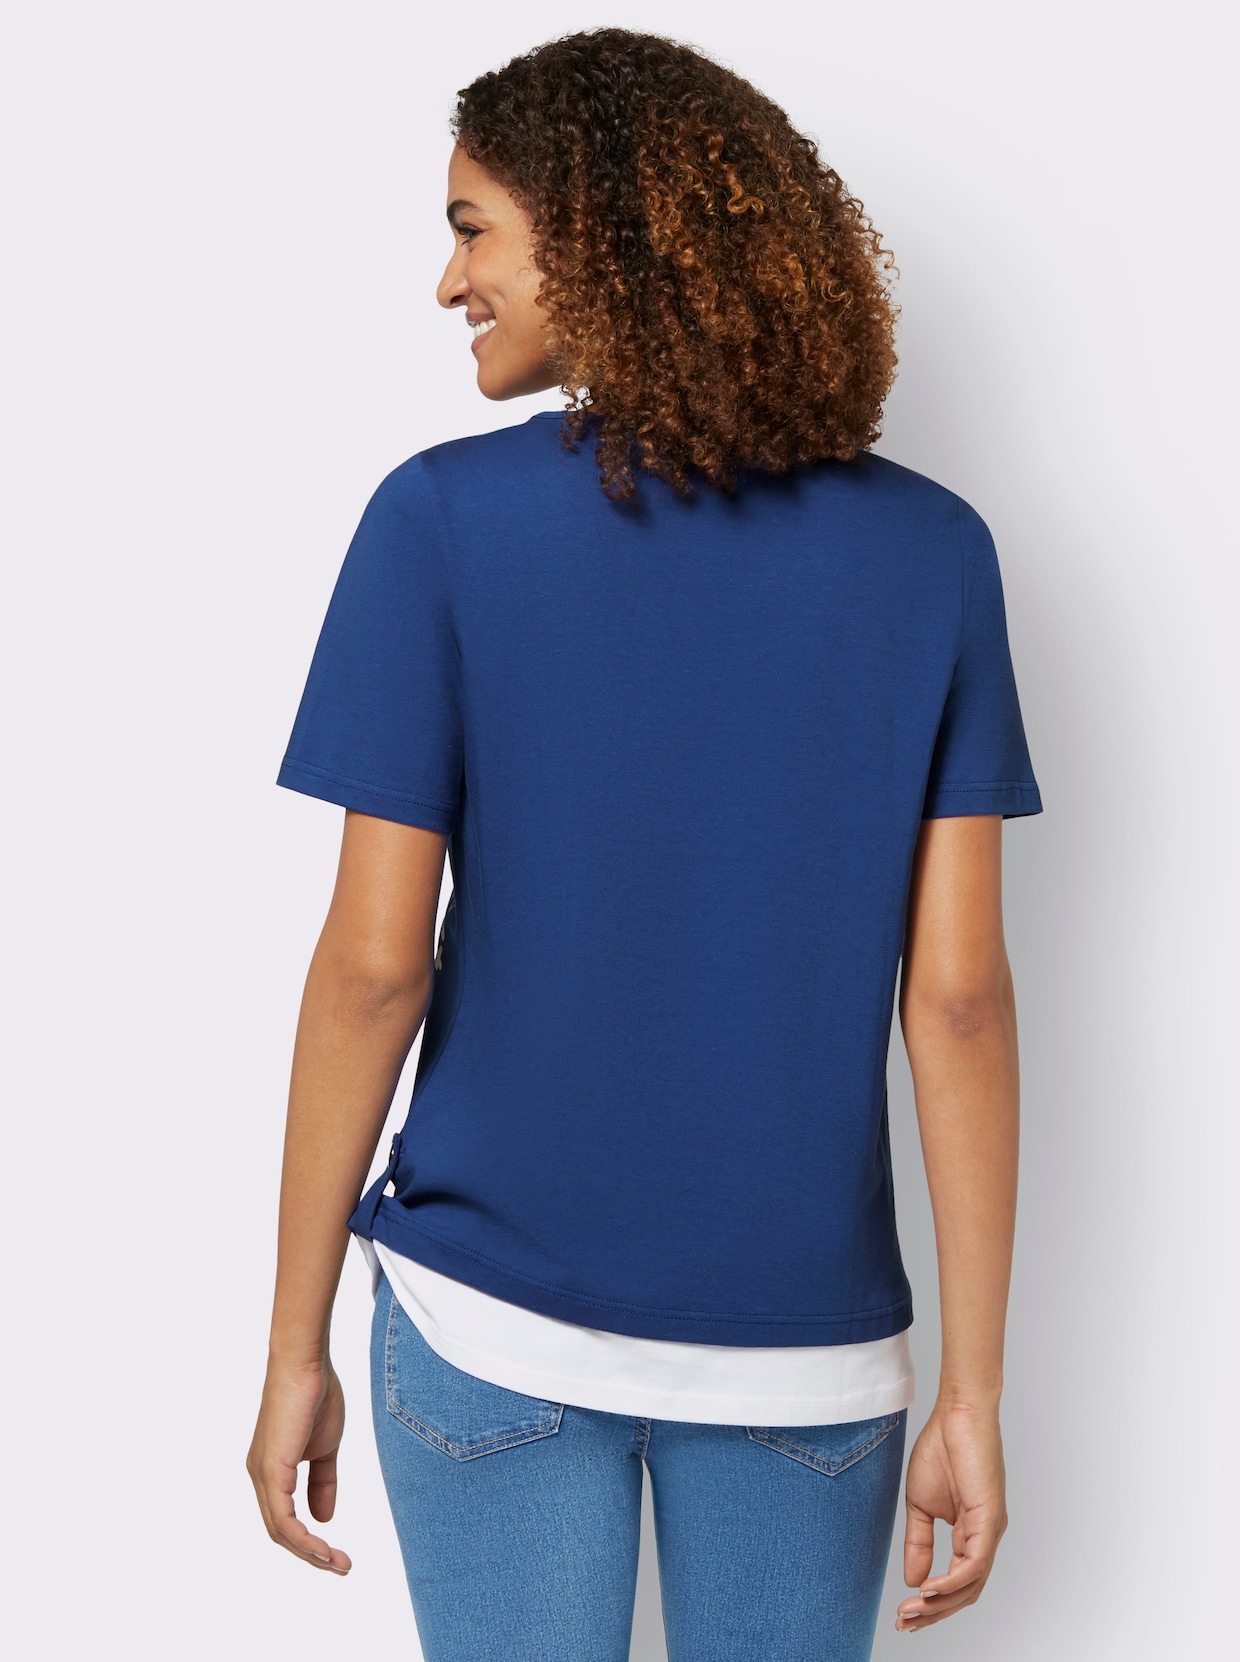 2-in-1-shirt - koningsblauw